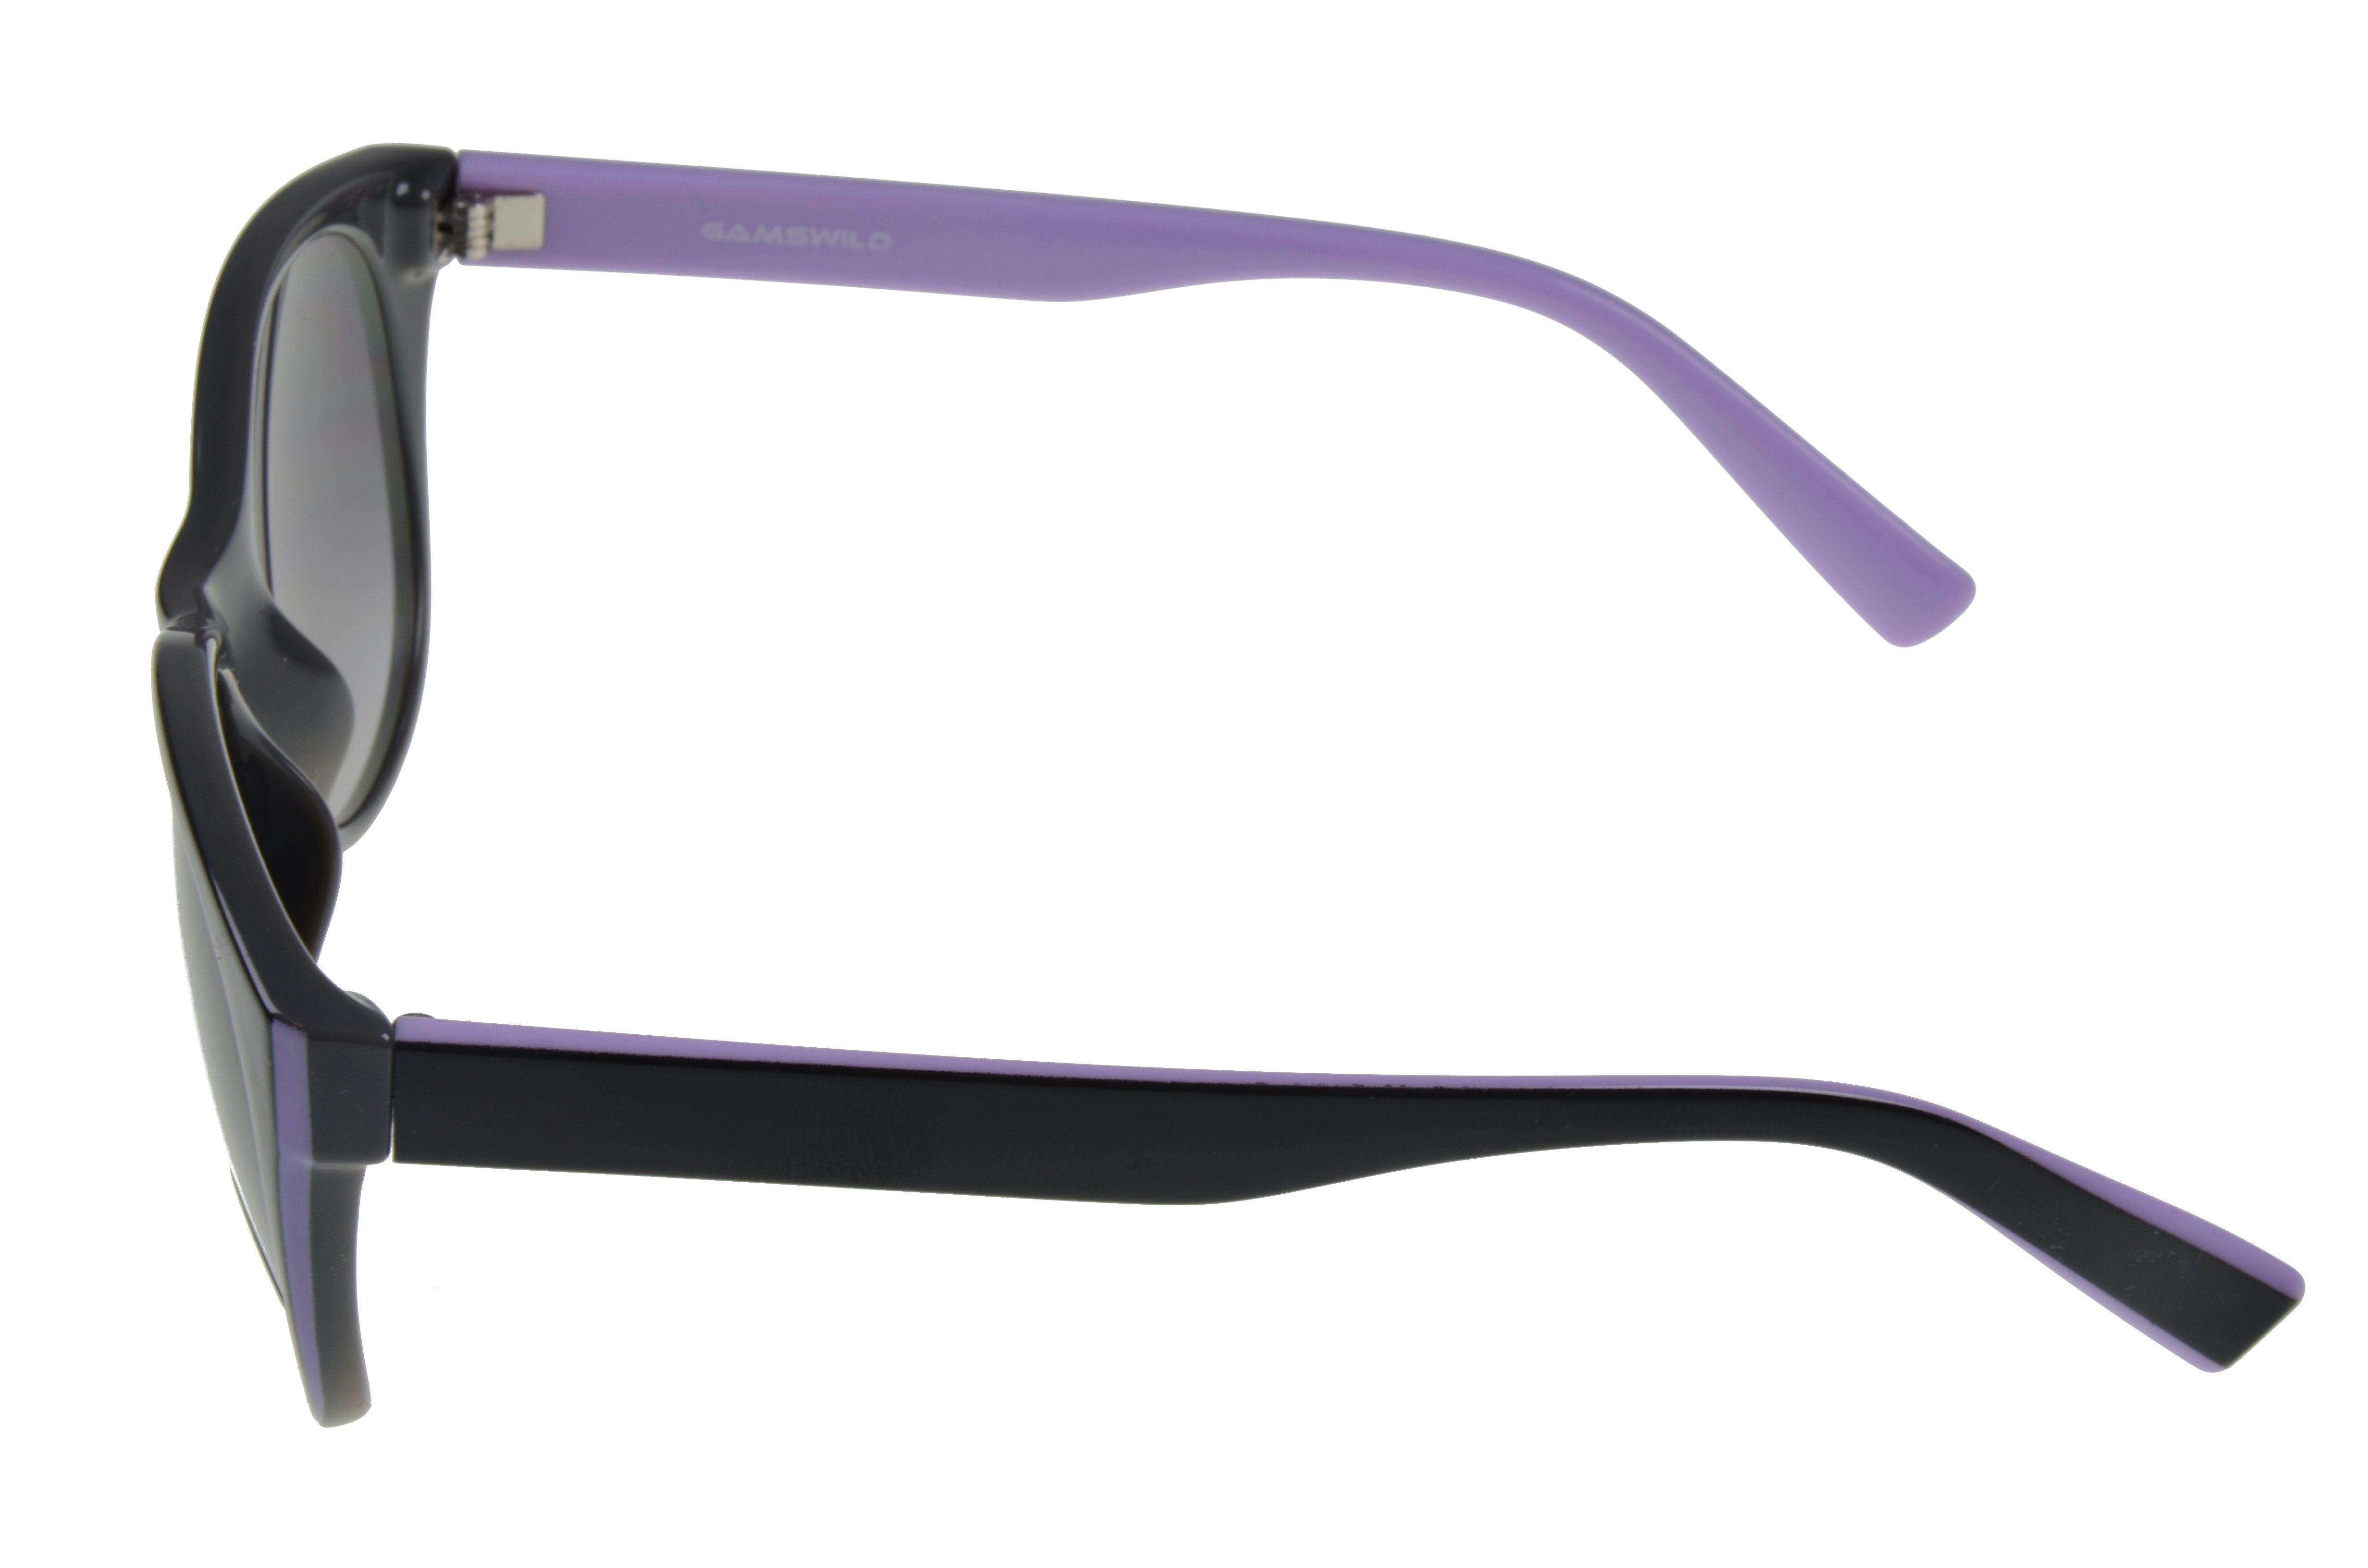 WM7027 GAMSSTYLE schwarz Brille Mode lila, Damen lila Sonnenbrille schwarz beige, - Gamswild Cat-Eye - Herren Unisex /